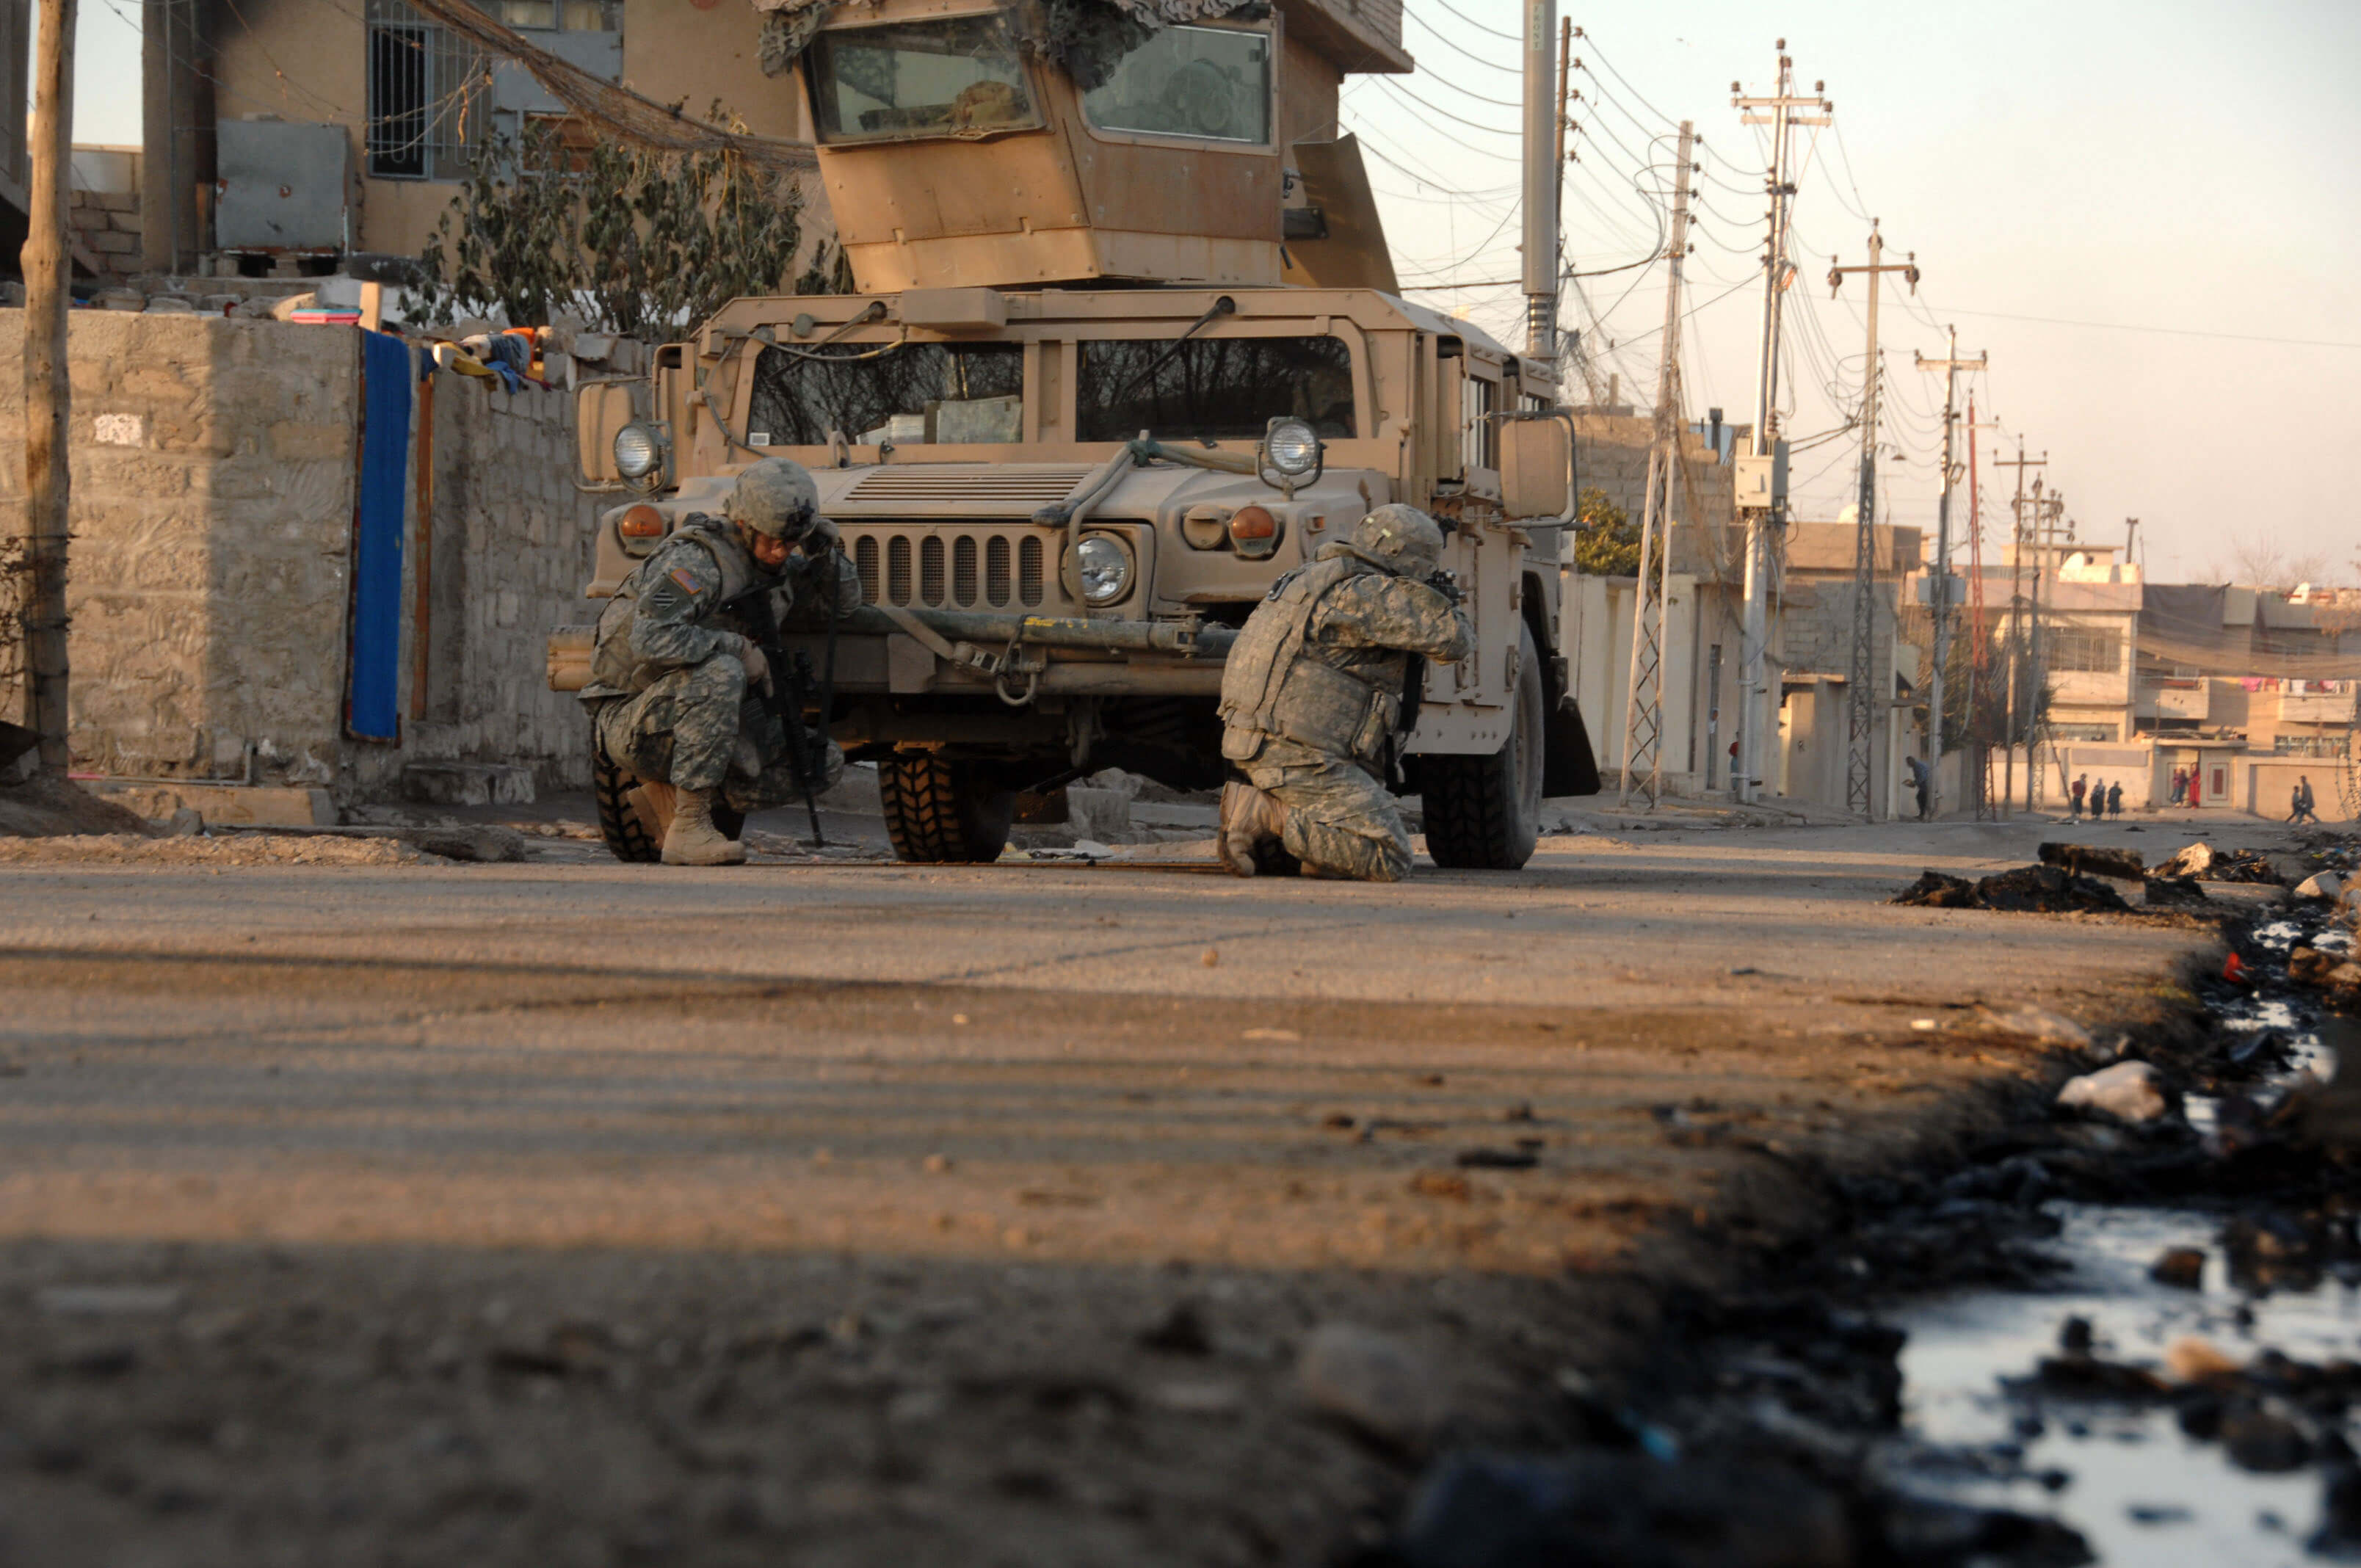 Amerikaanse soldaten zoeken dekking achter een voertuig, Irak, 17 januari 2008 © U.S. Army photo by Spc. Kieran Cuddihy